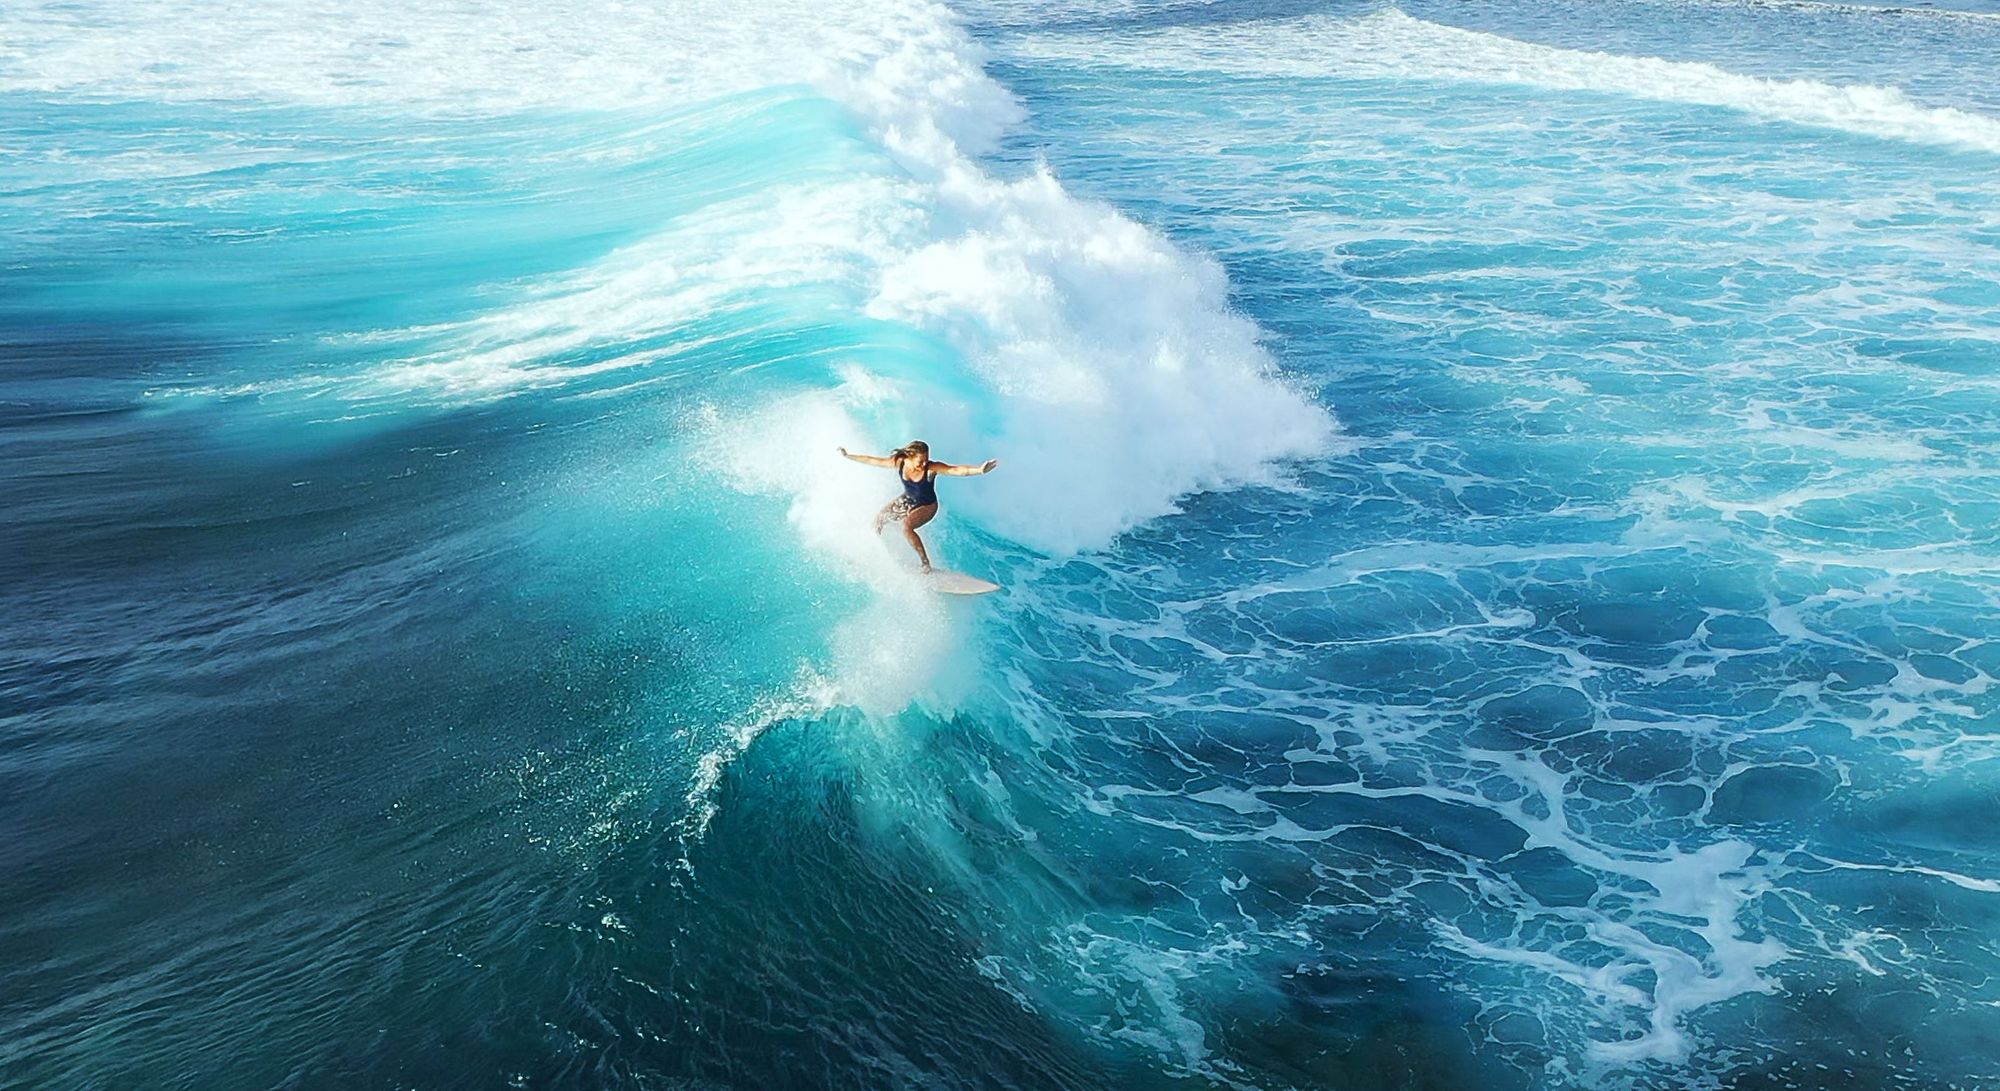 A woman surfs a wave